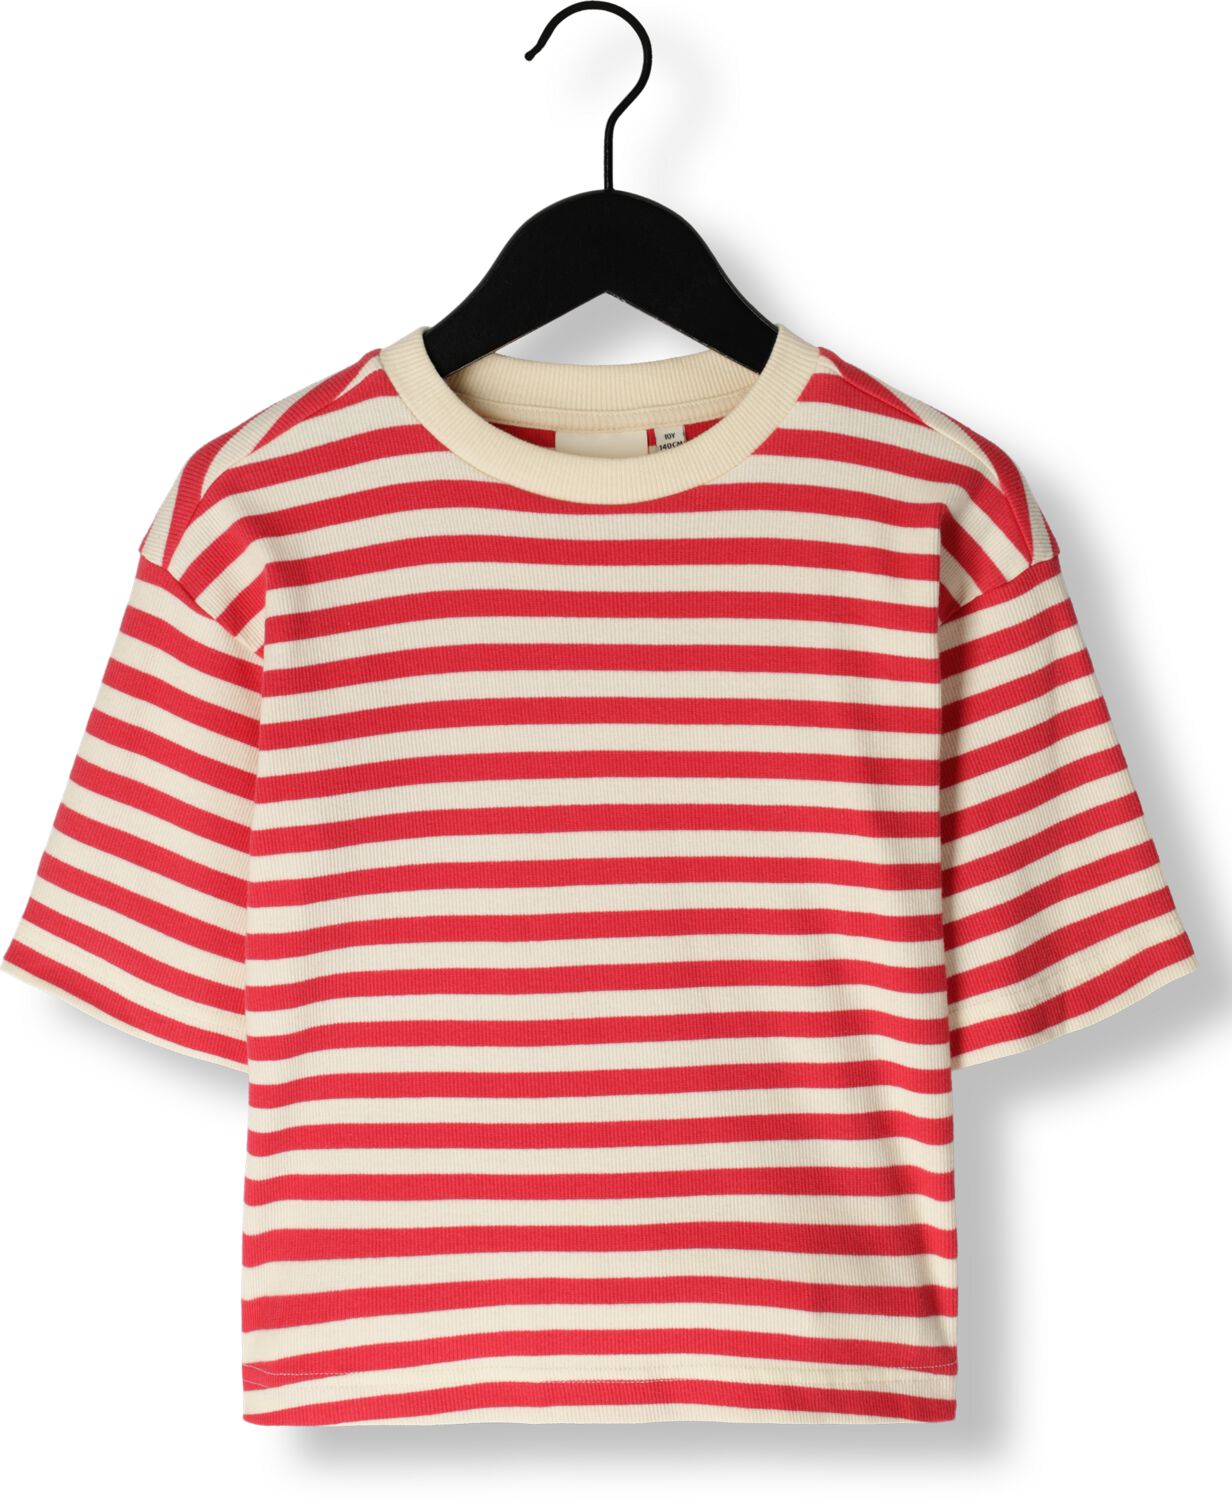 Sofie Schnoor gestreept T-shirt rood wit Meisjes Biologisch katoen Ronde hals 164